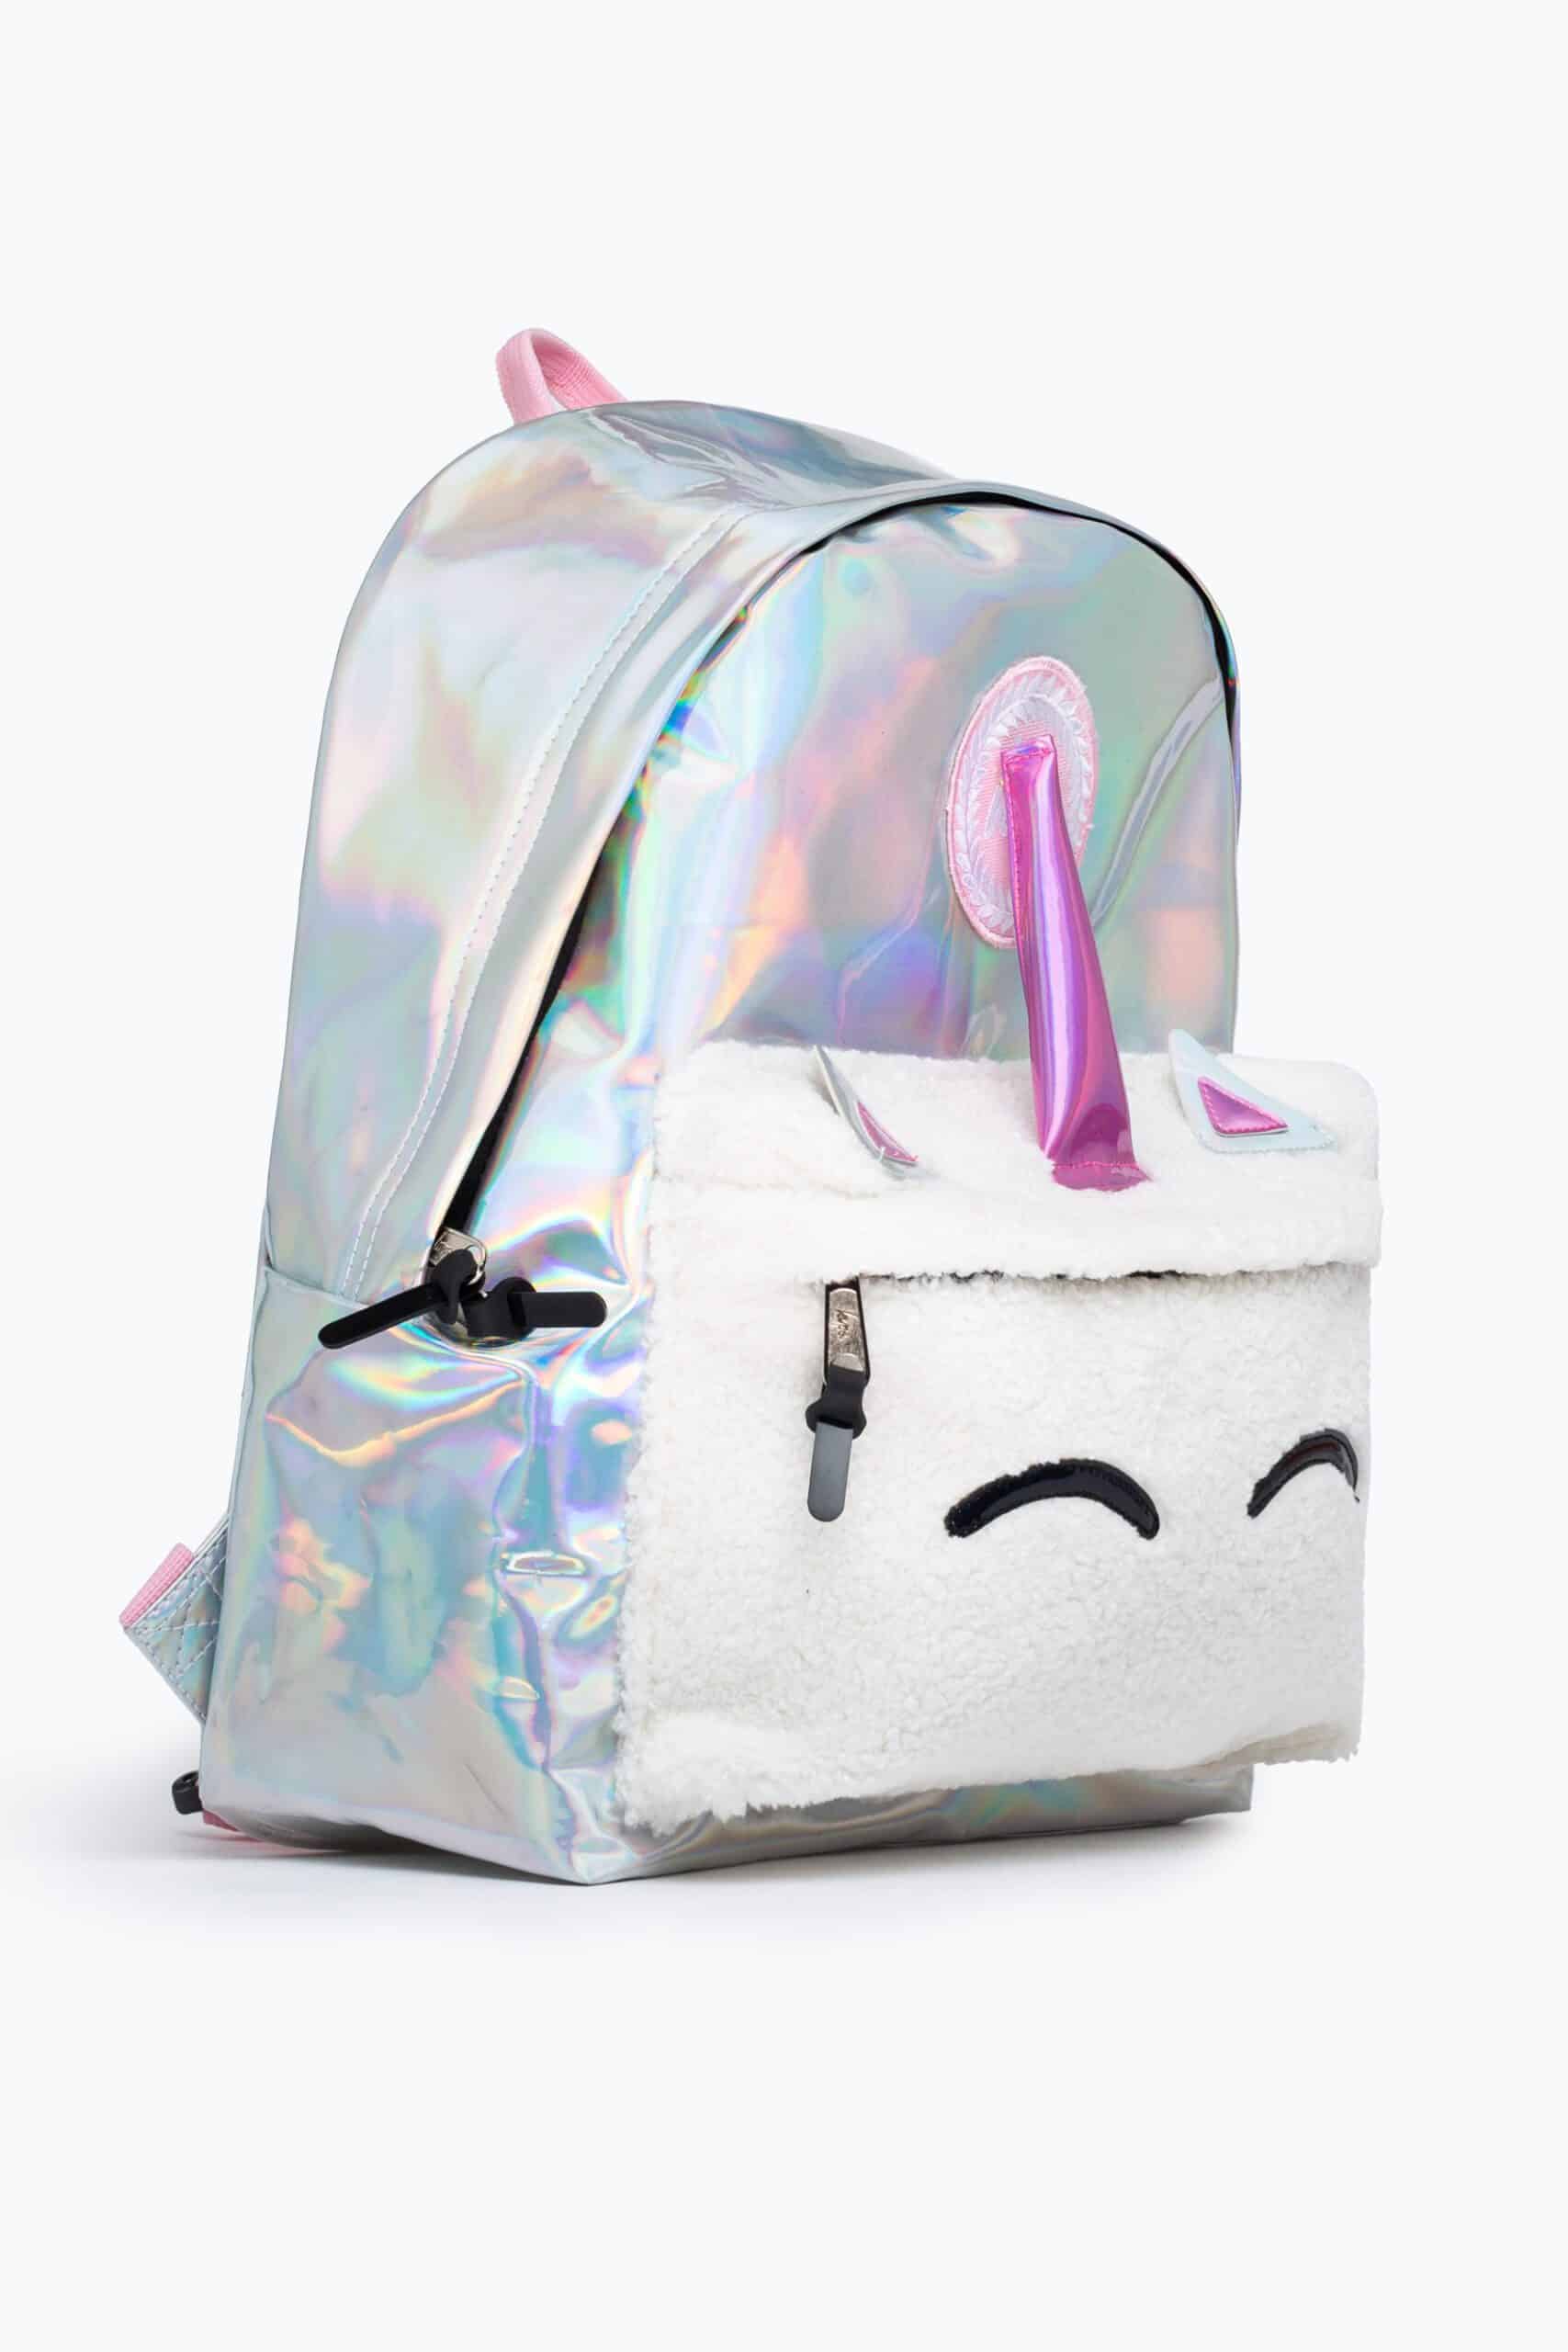 hype metallic unicorn backpack side view